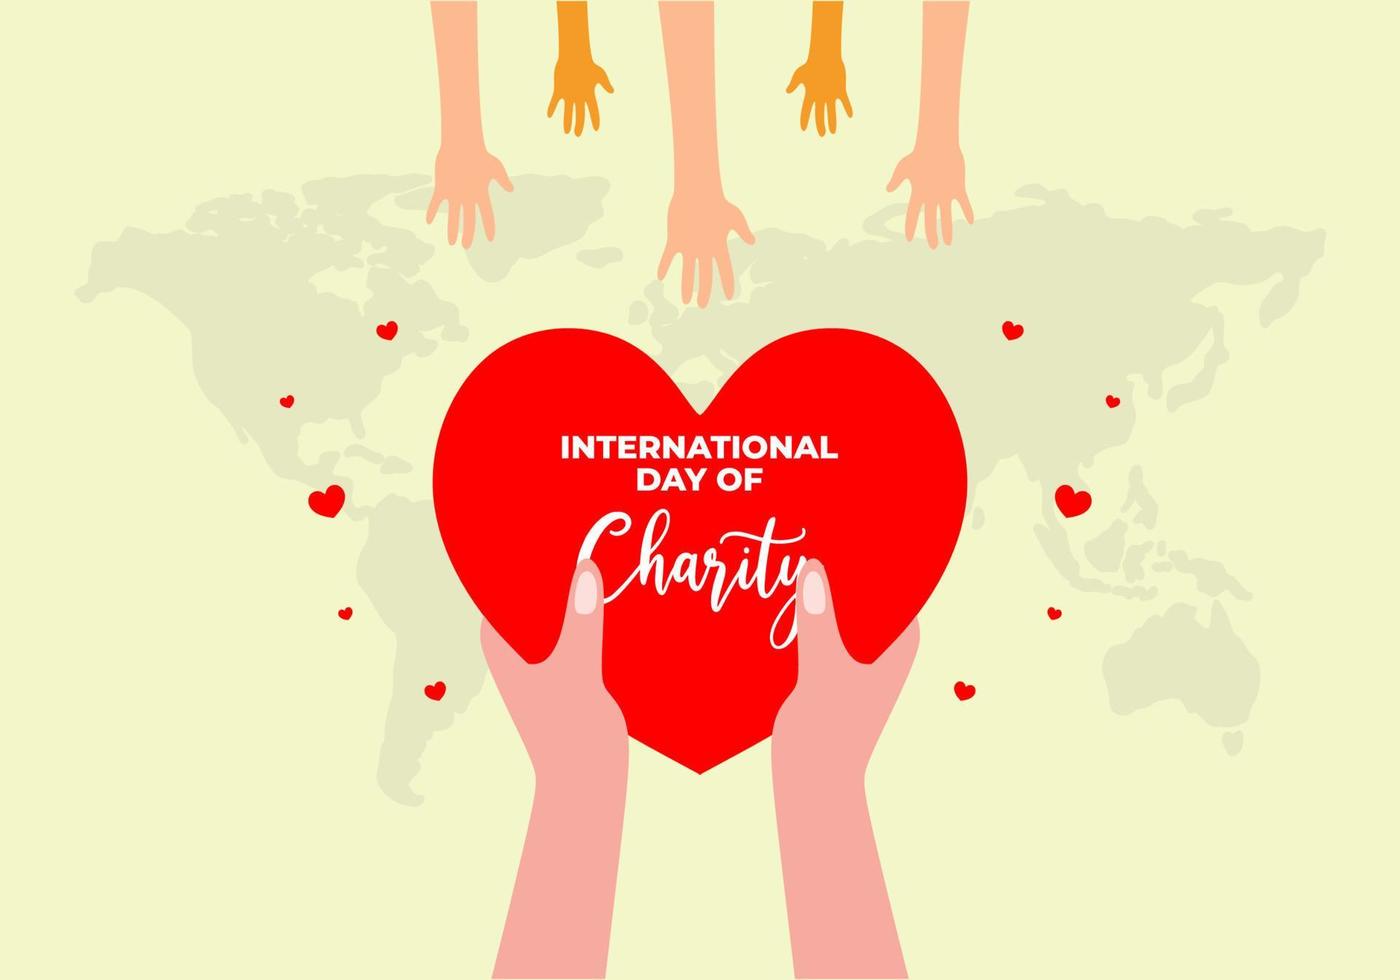 internationella dagen för välgörenhet banner affisch den 5 september med hand ge kärlek till andra handen på vit bakgrund vektor